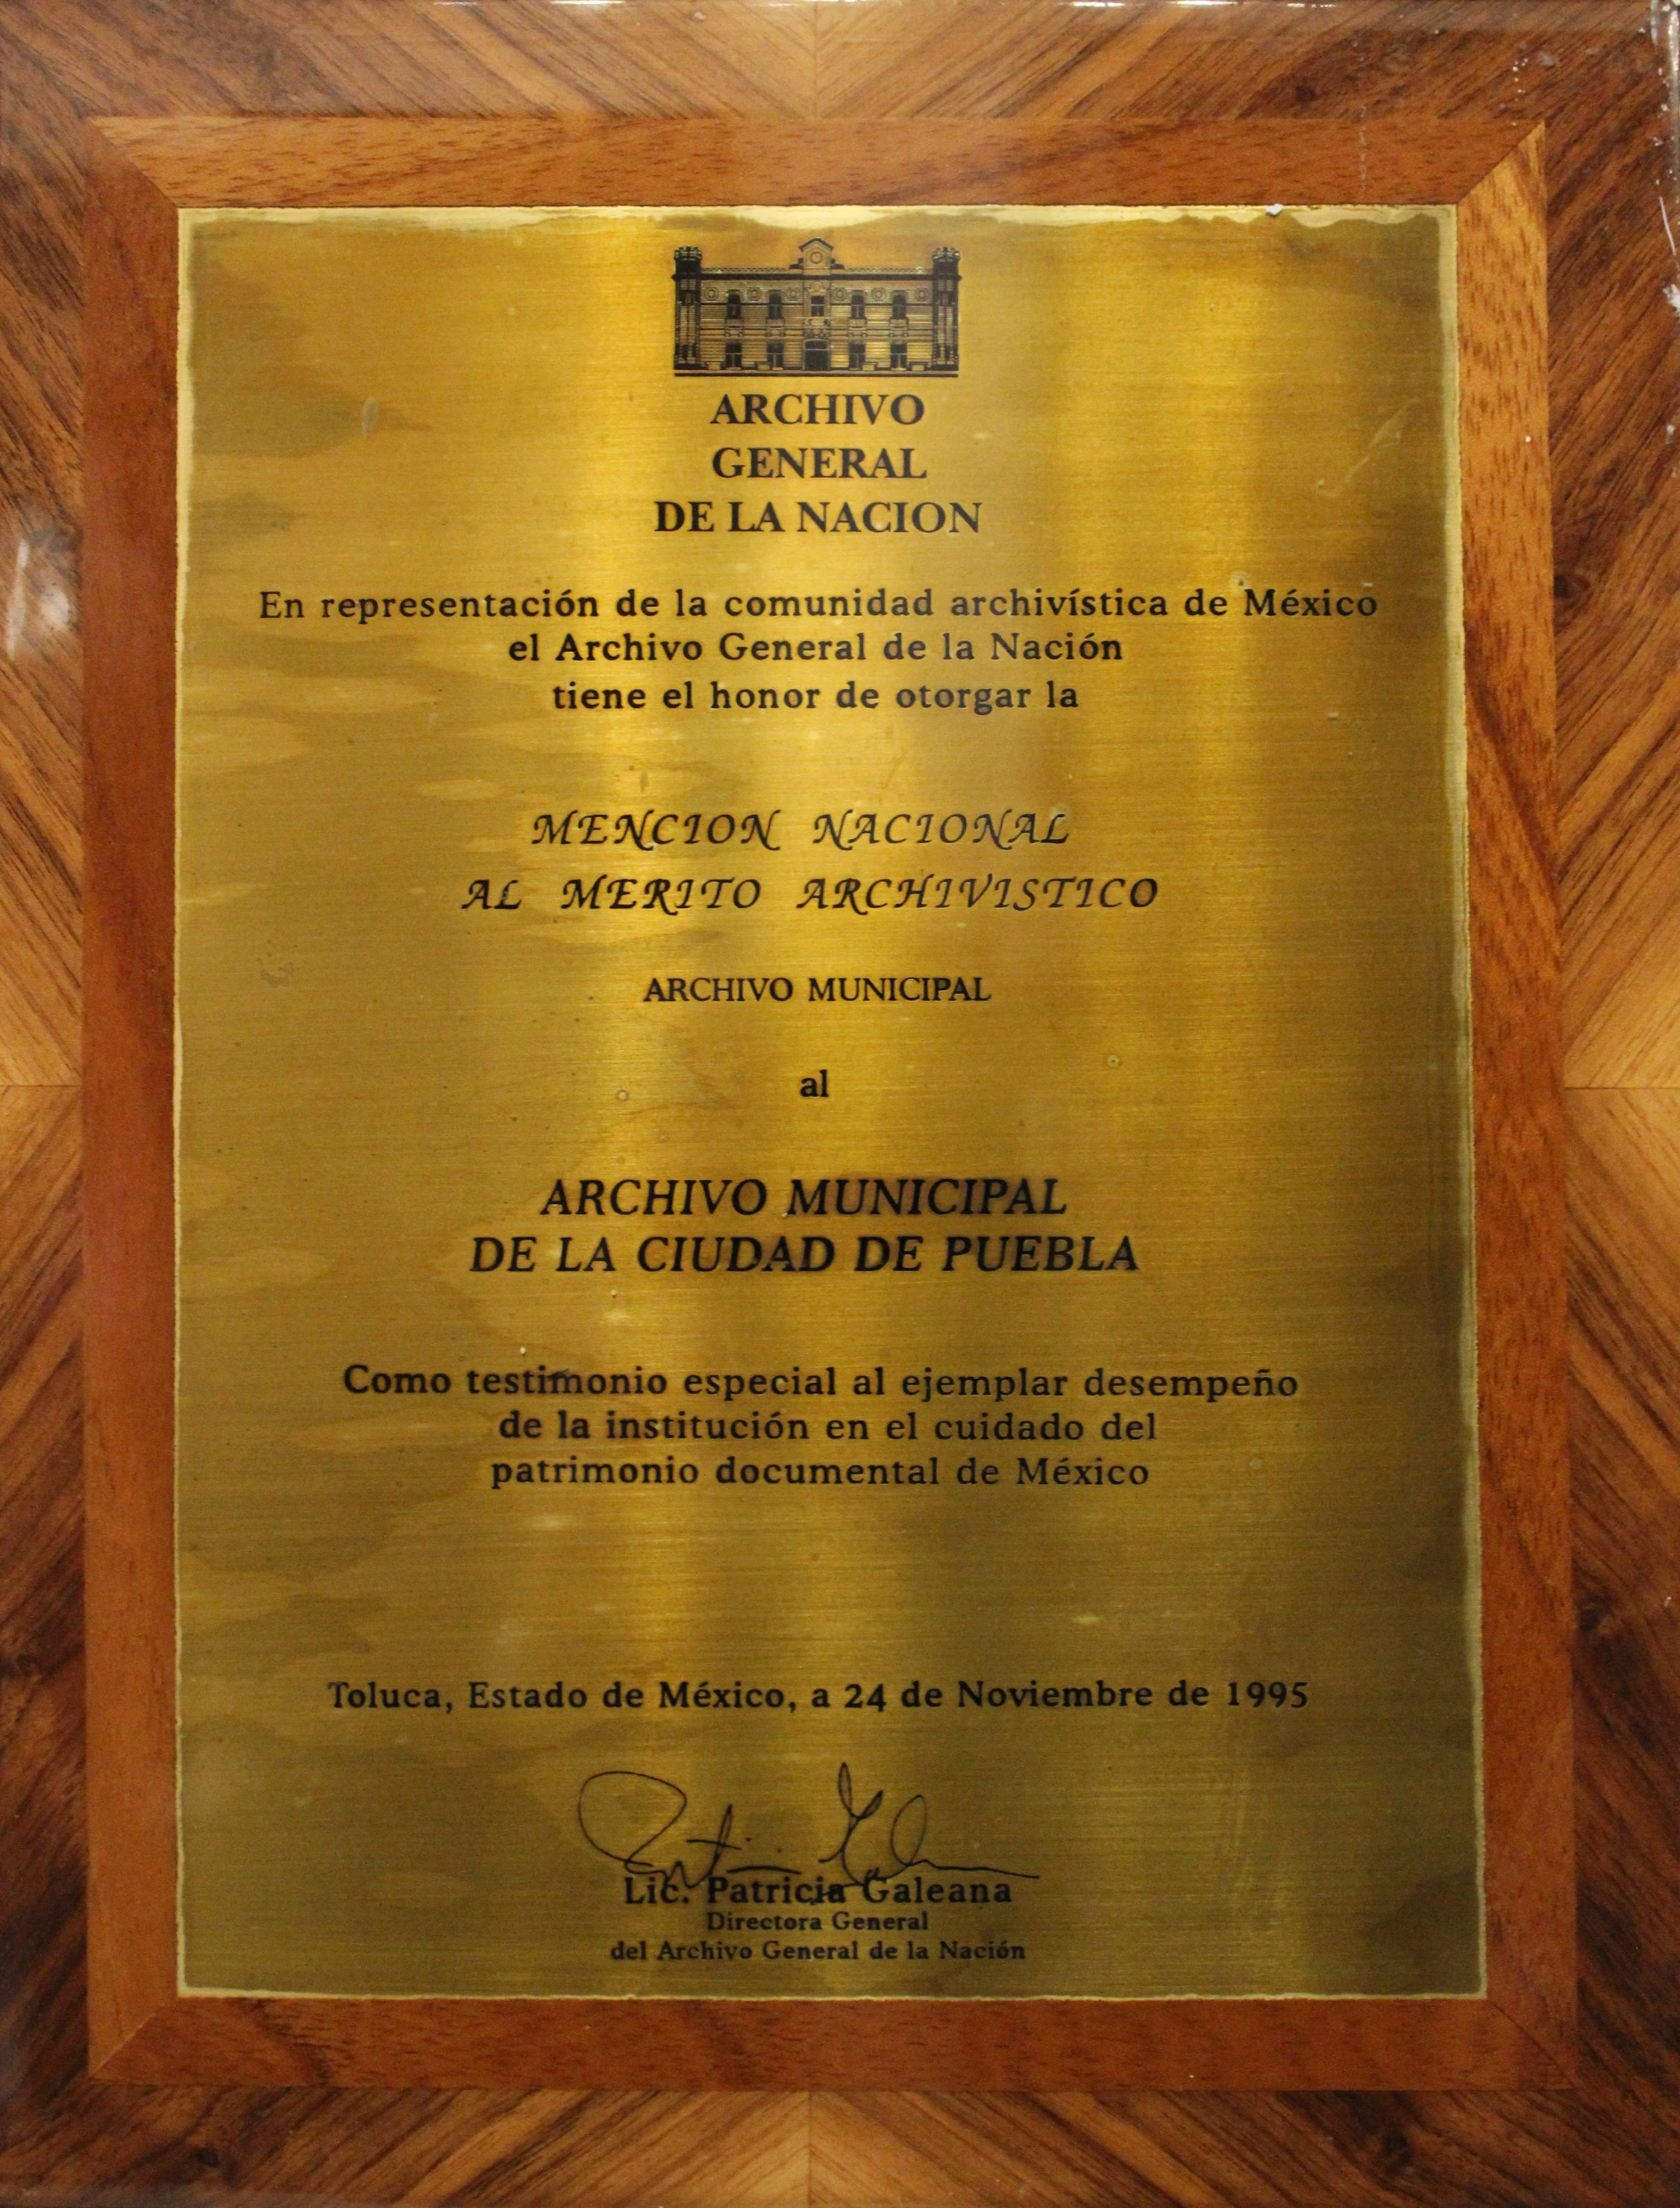 Mención Nacional al Mérito Archivístico